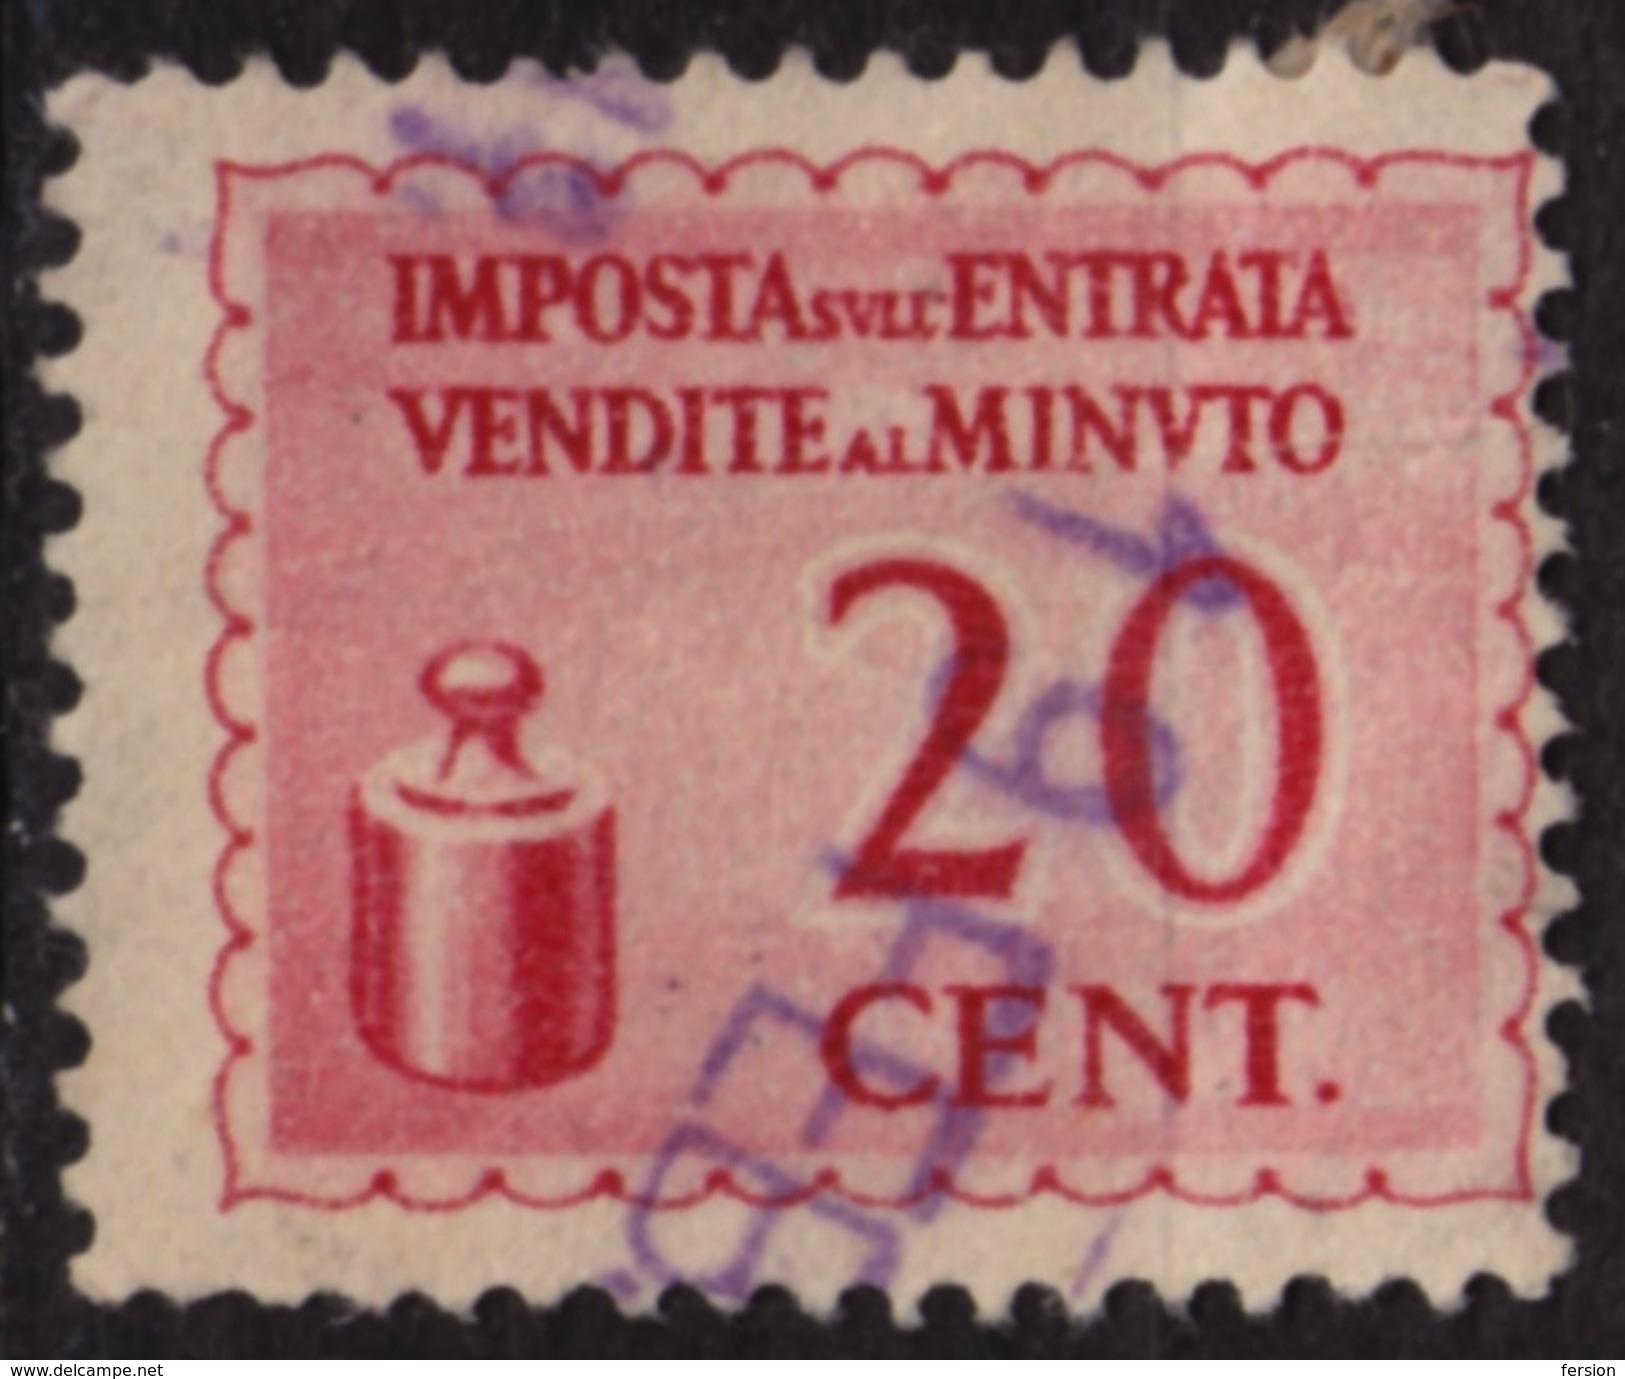 Italy - Sales Tax VAT Revenue Stamp / Imposta Entrata Vendite Minuto - Used - 20 Cent - Revenue Stamps